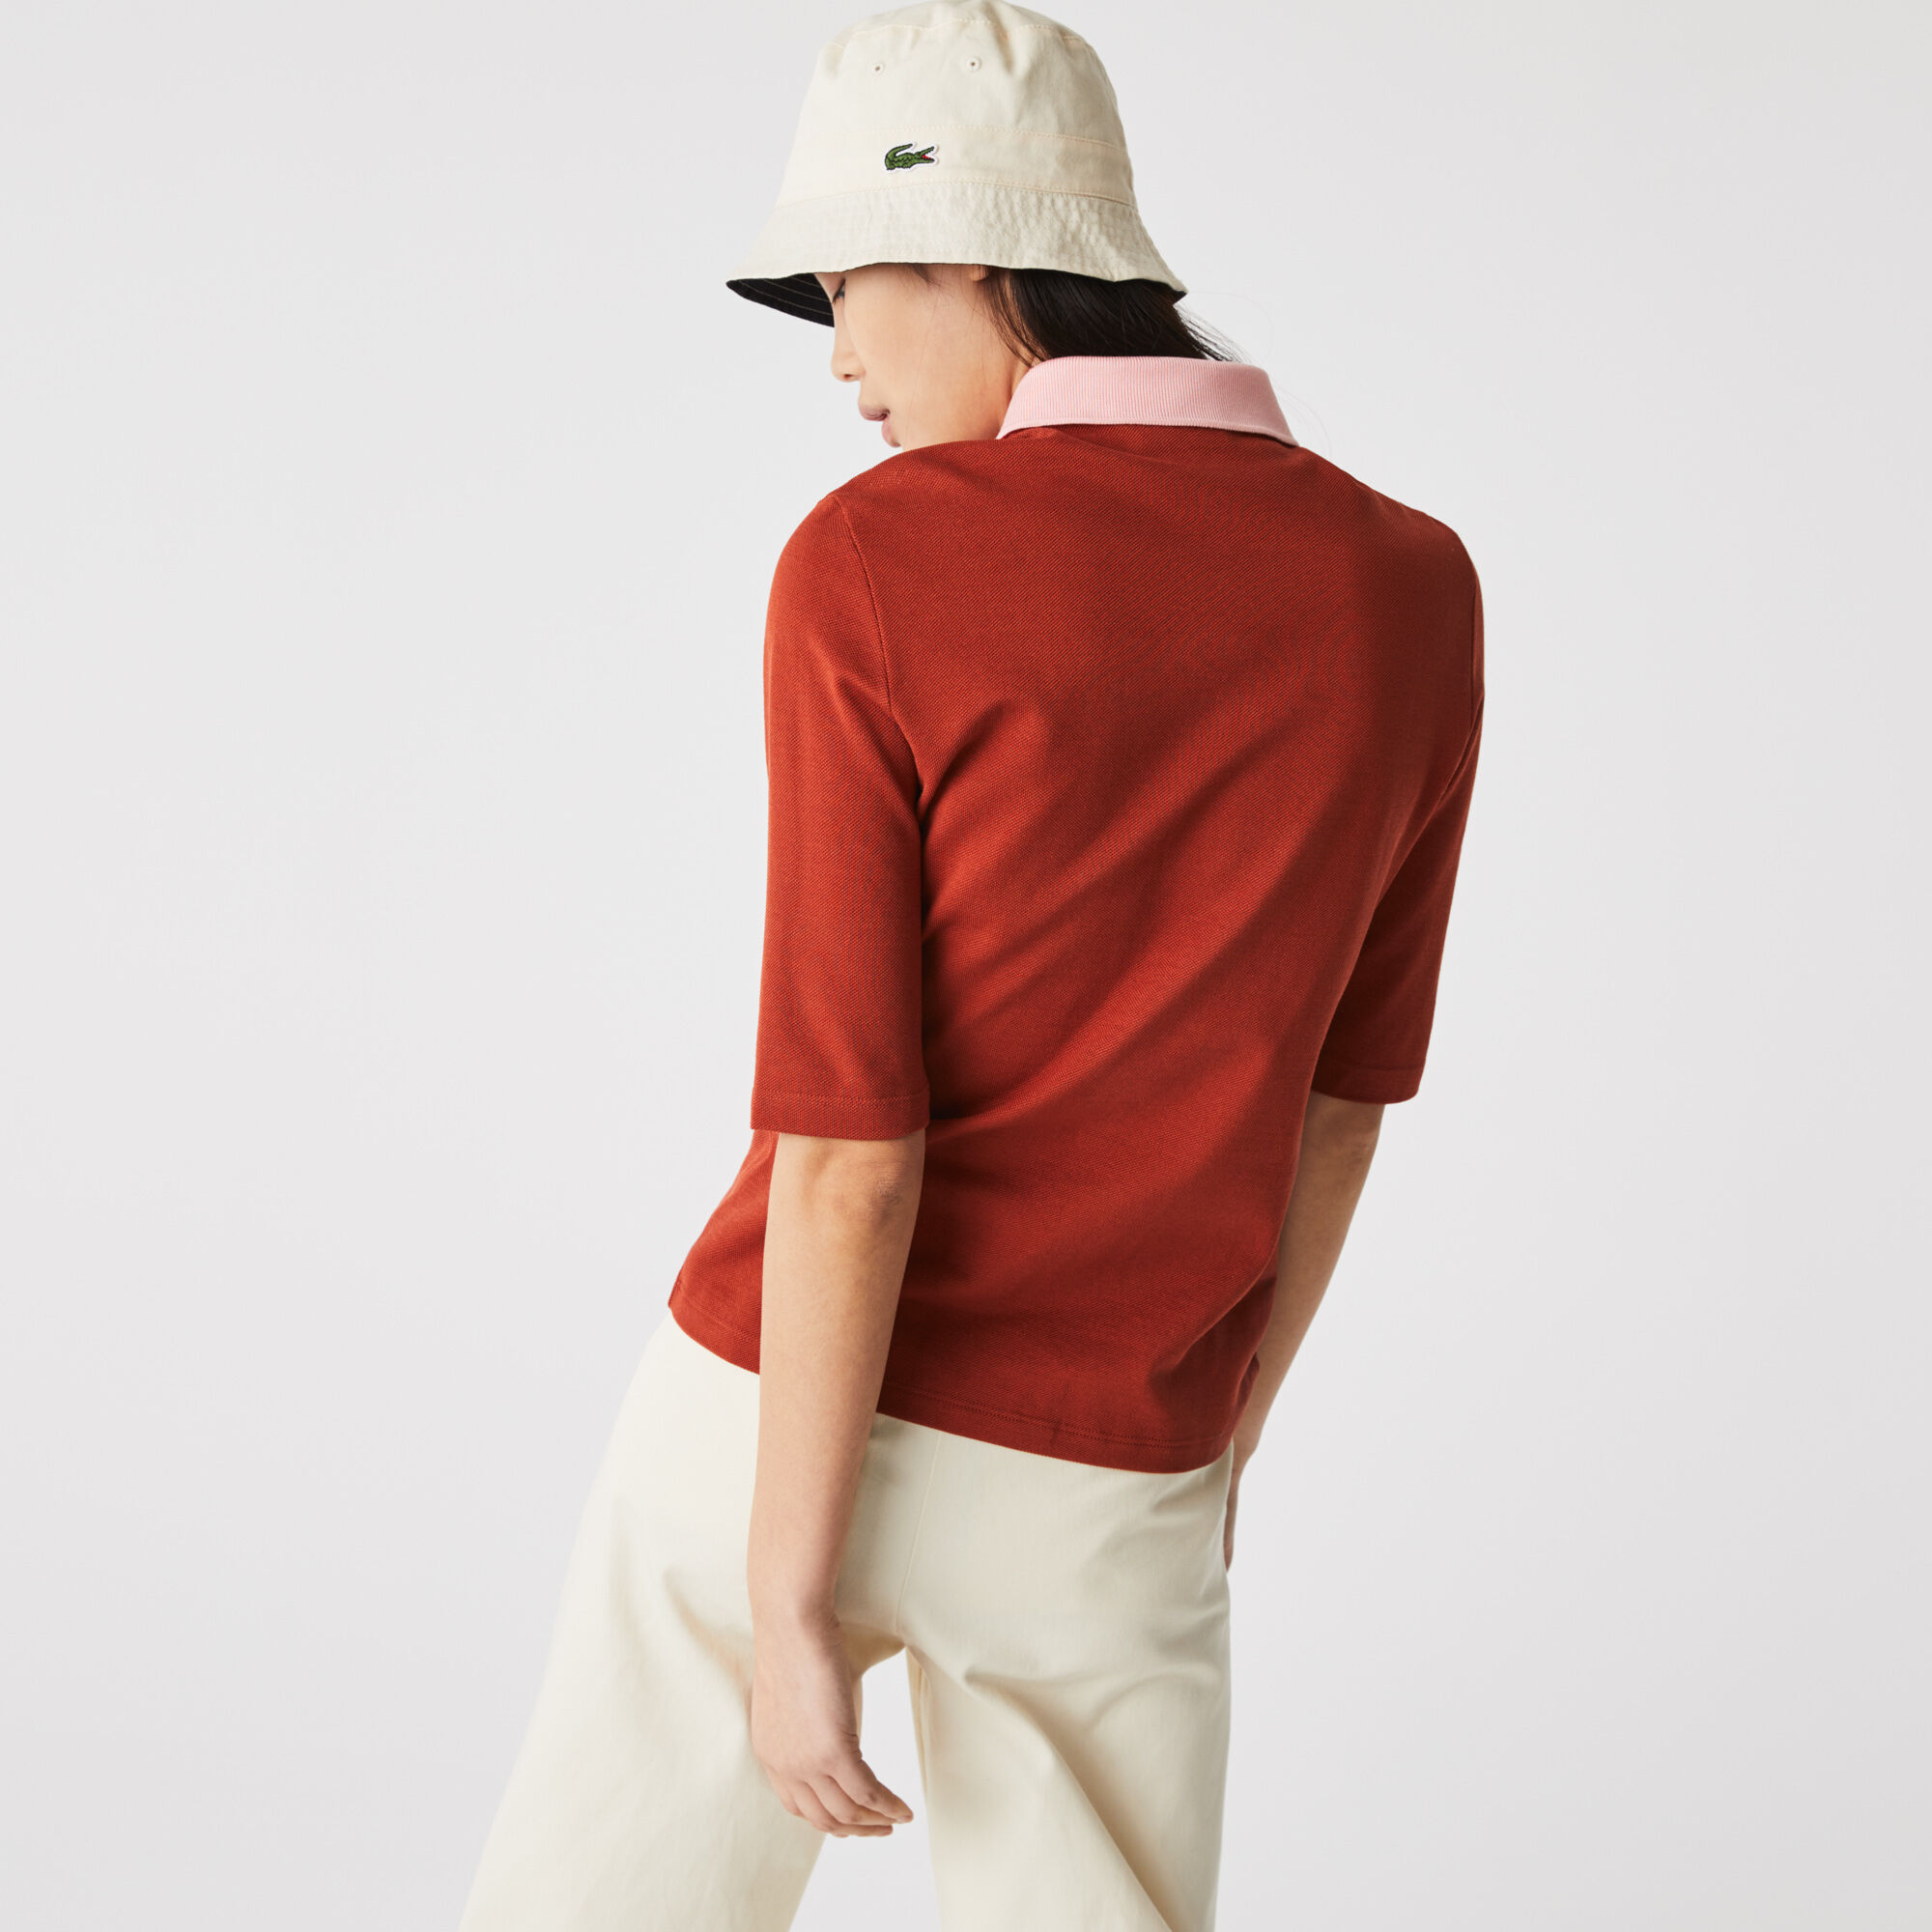 Women’s Lacoste Slim Fit Cotton Polo Shirt